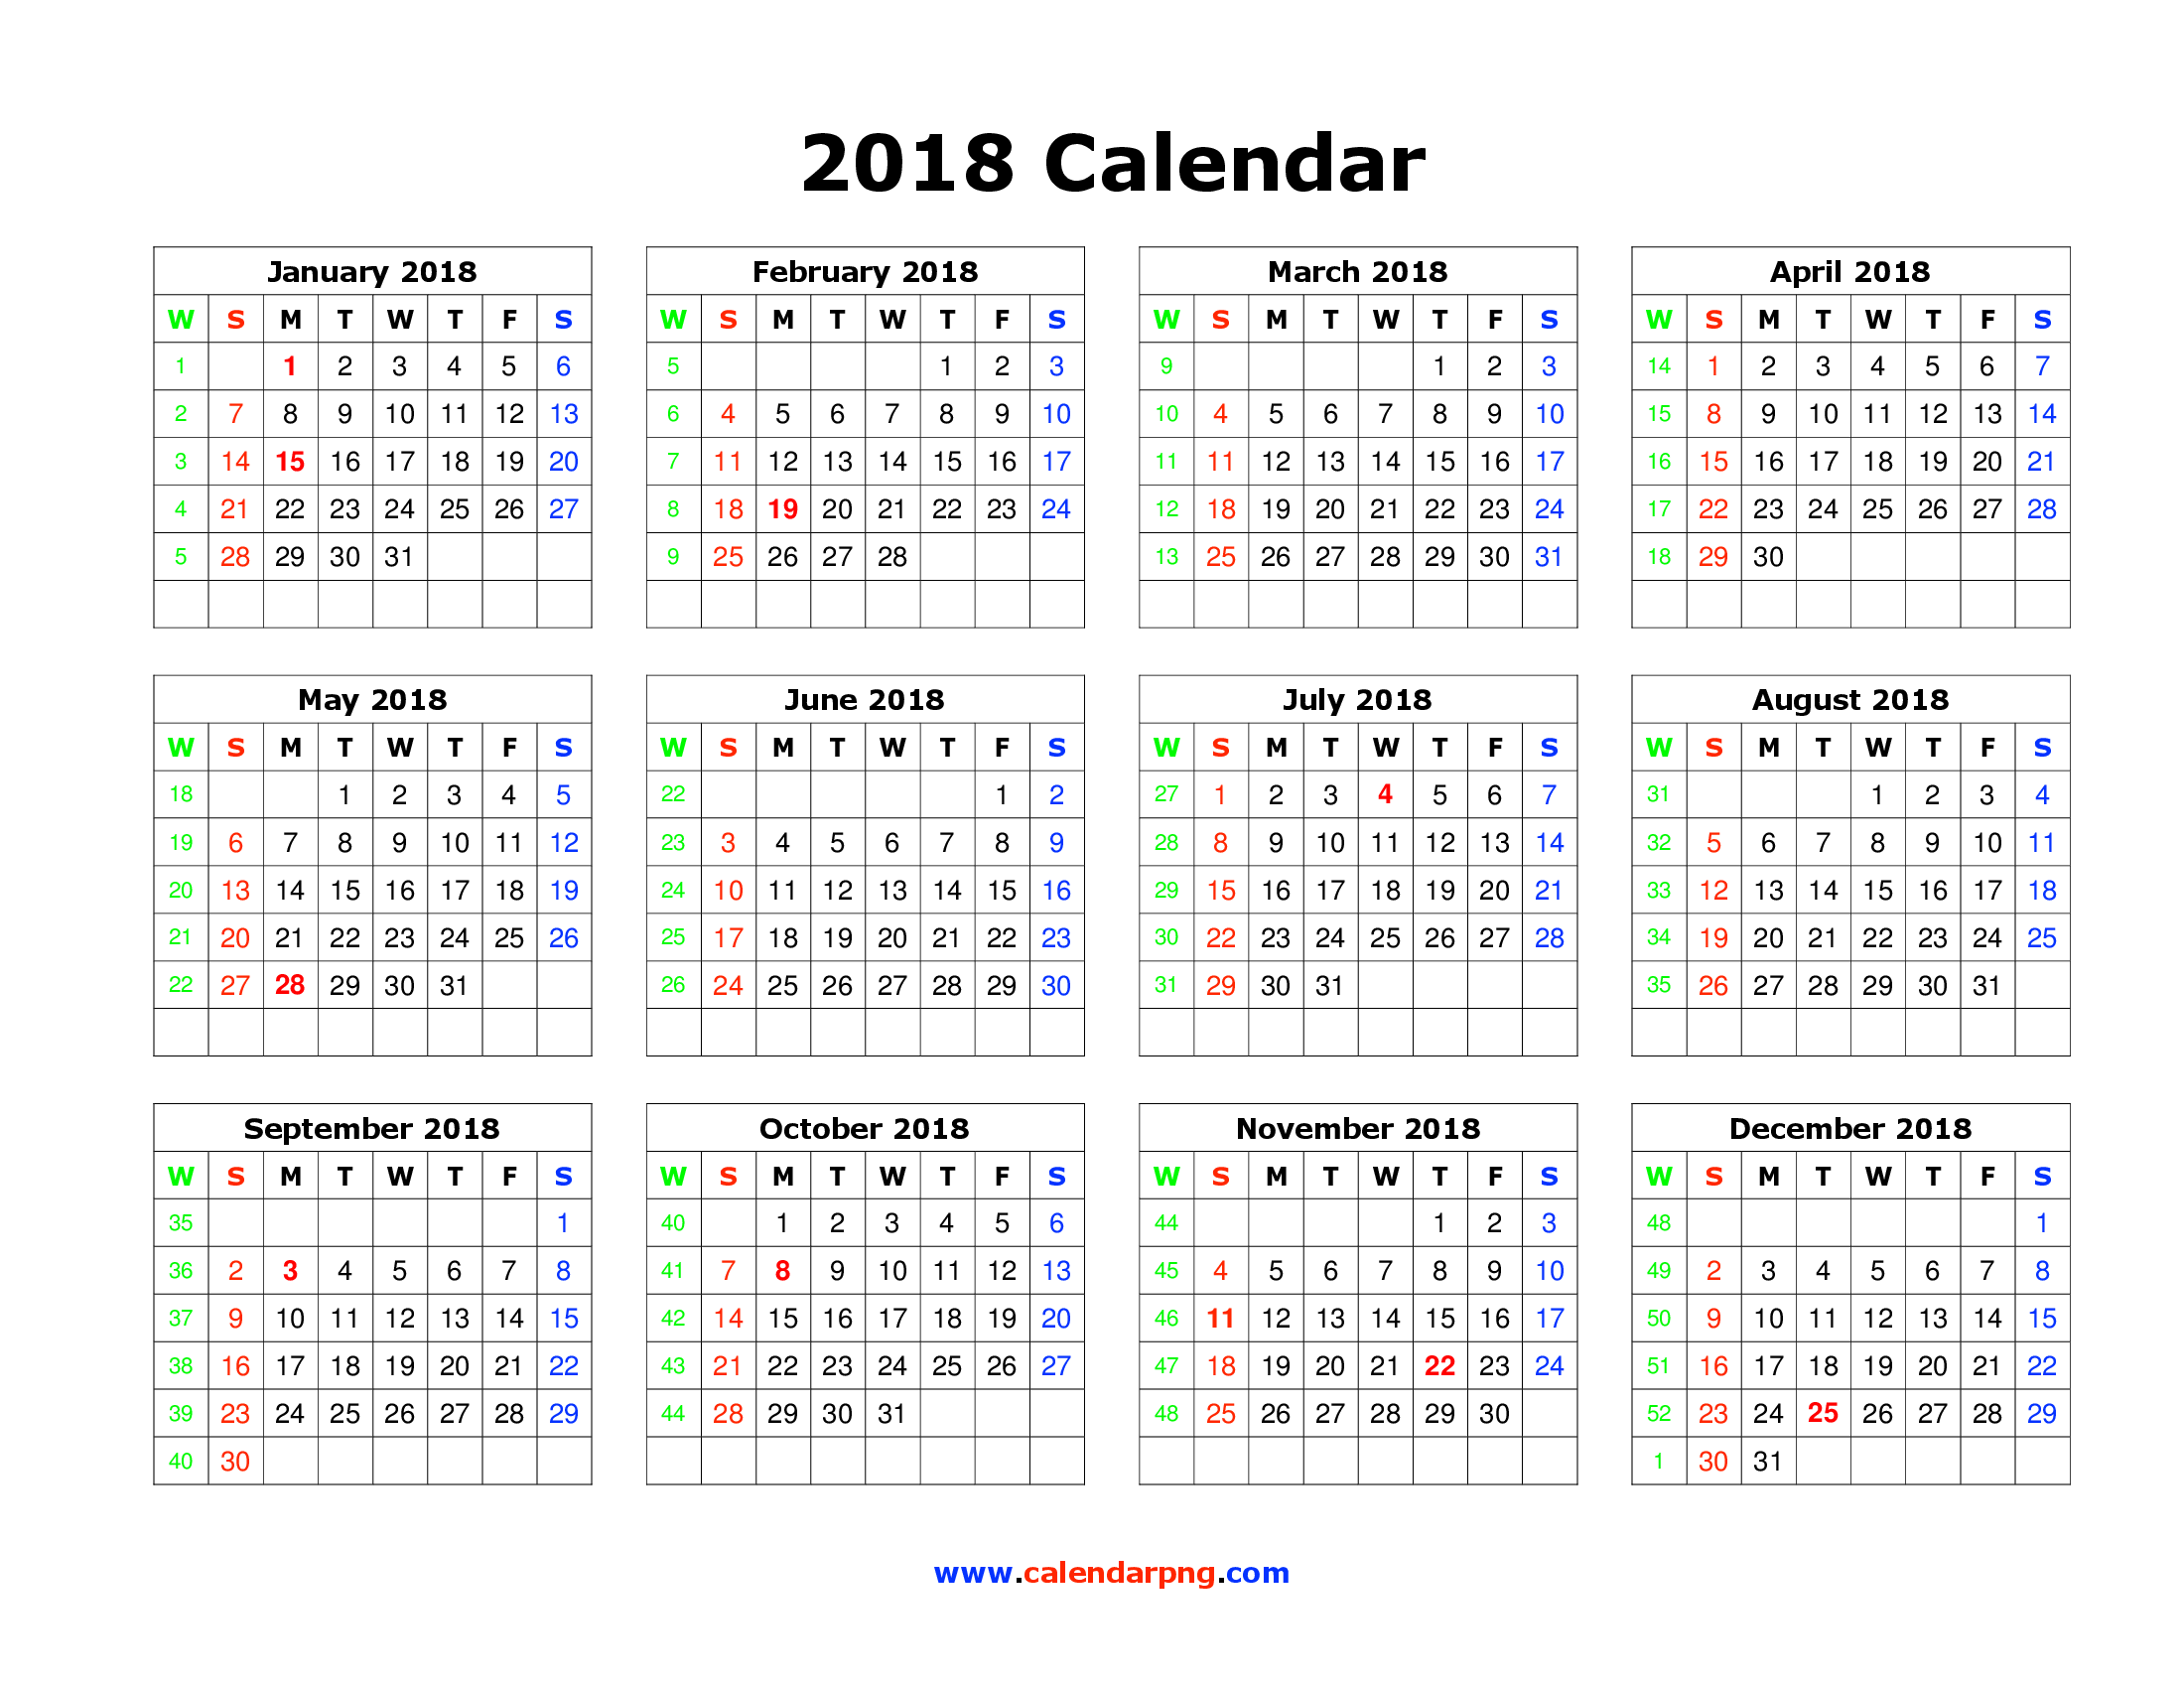 Blank September 2017 calendar